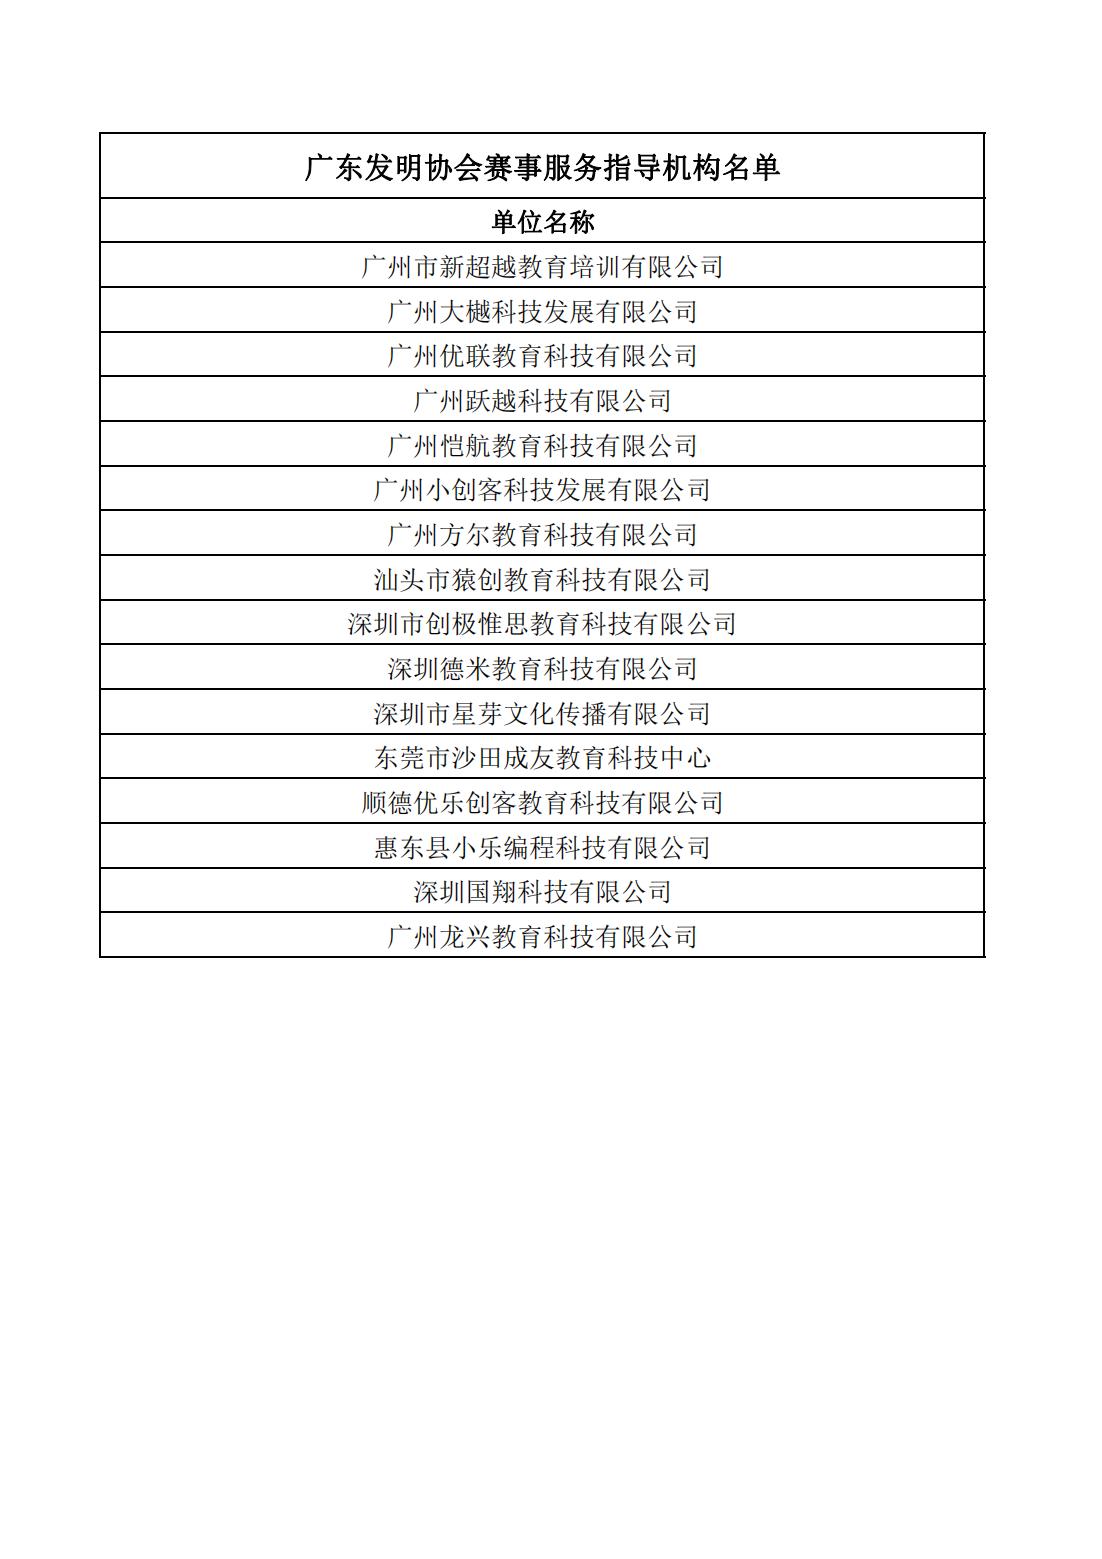 广东发明协会赛事服务指导机构名单-挂网-最新名单_00.jpg